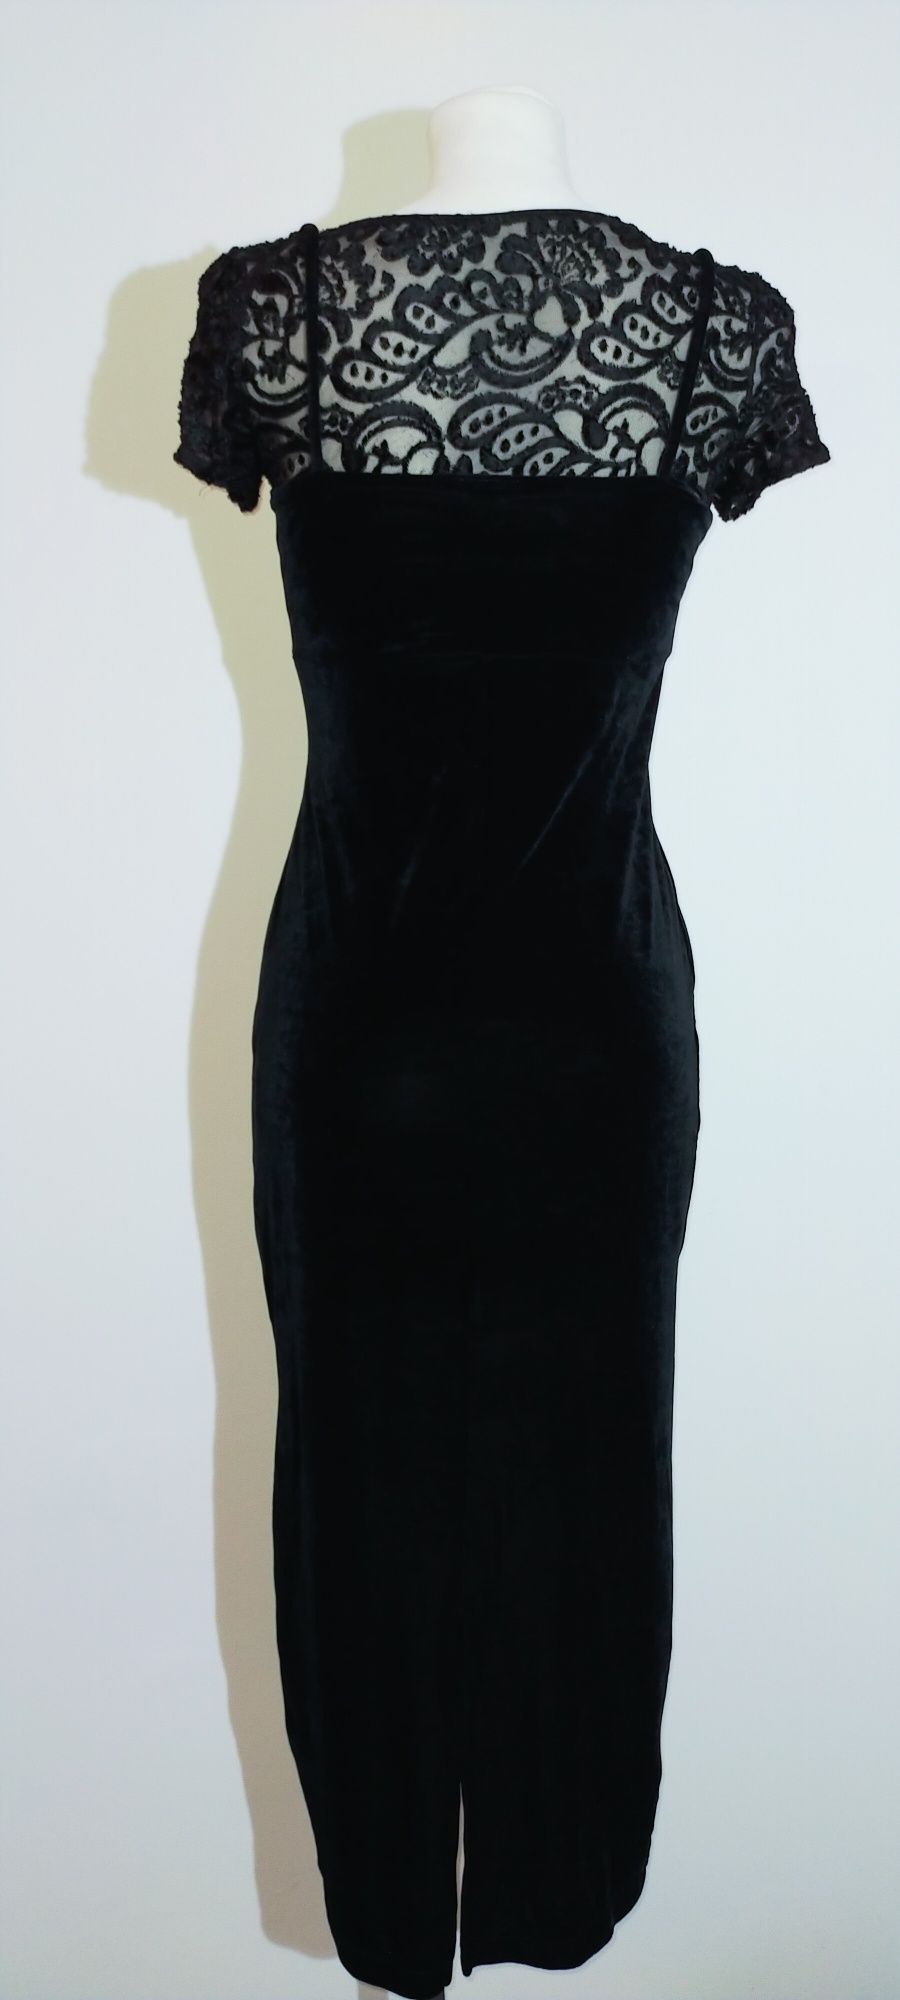 Sukienka midi dopasowana czarna welurowa 36 S 38 M welur krótki rękaw